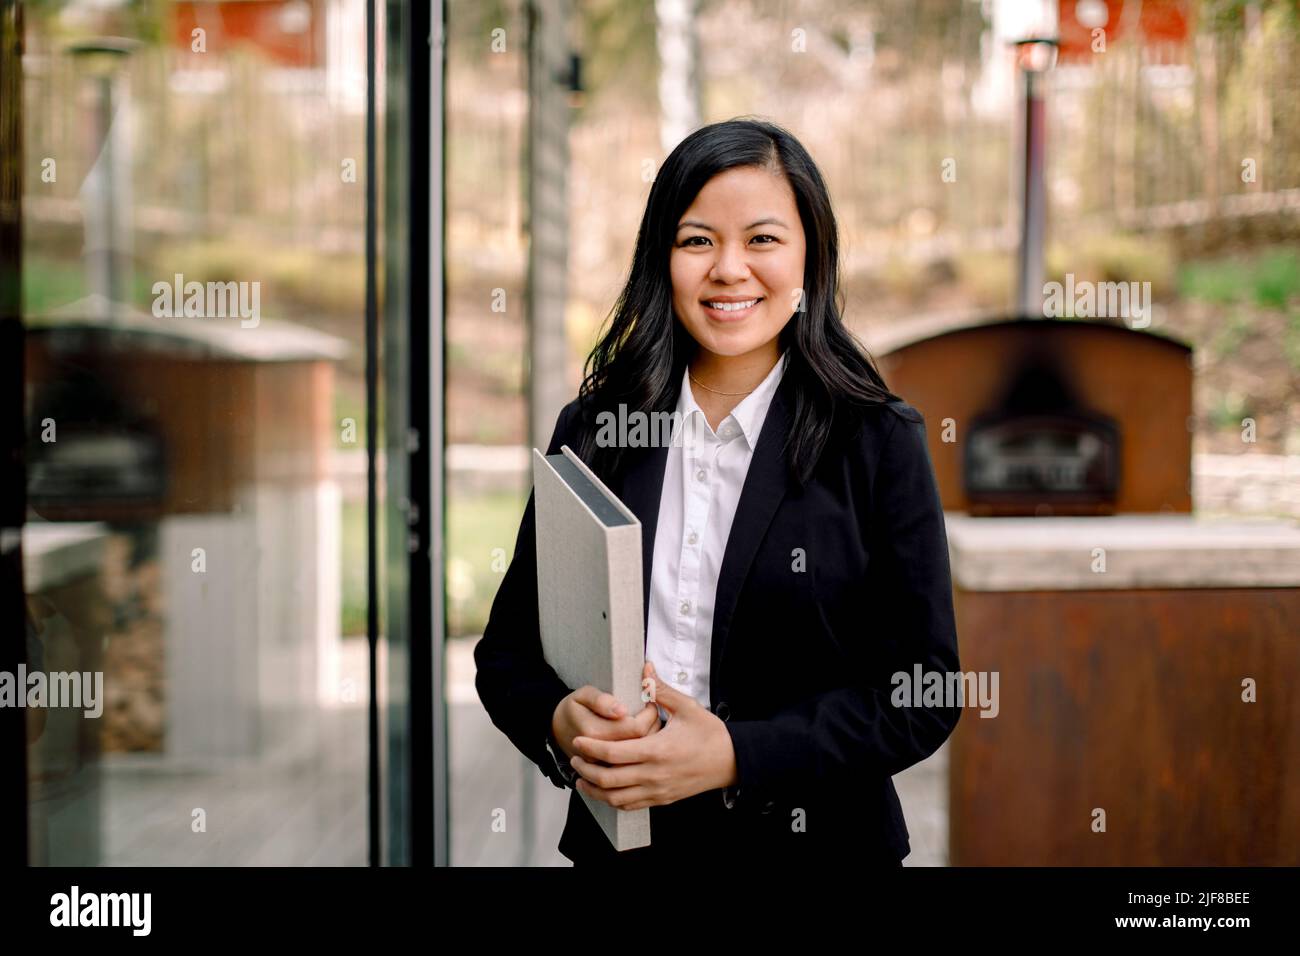 Retrato de una mujer de confianza en la propiedad inmobiliaria que está de pie fuera de la casa Foto de stock